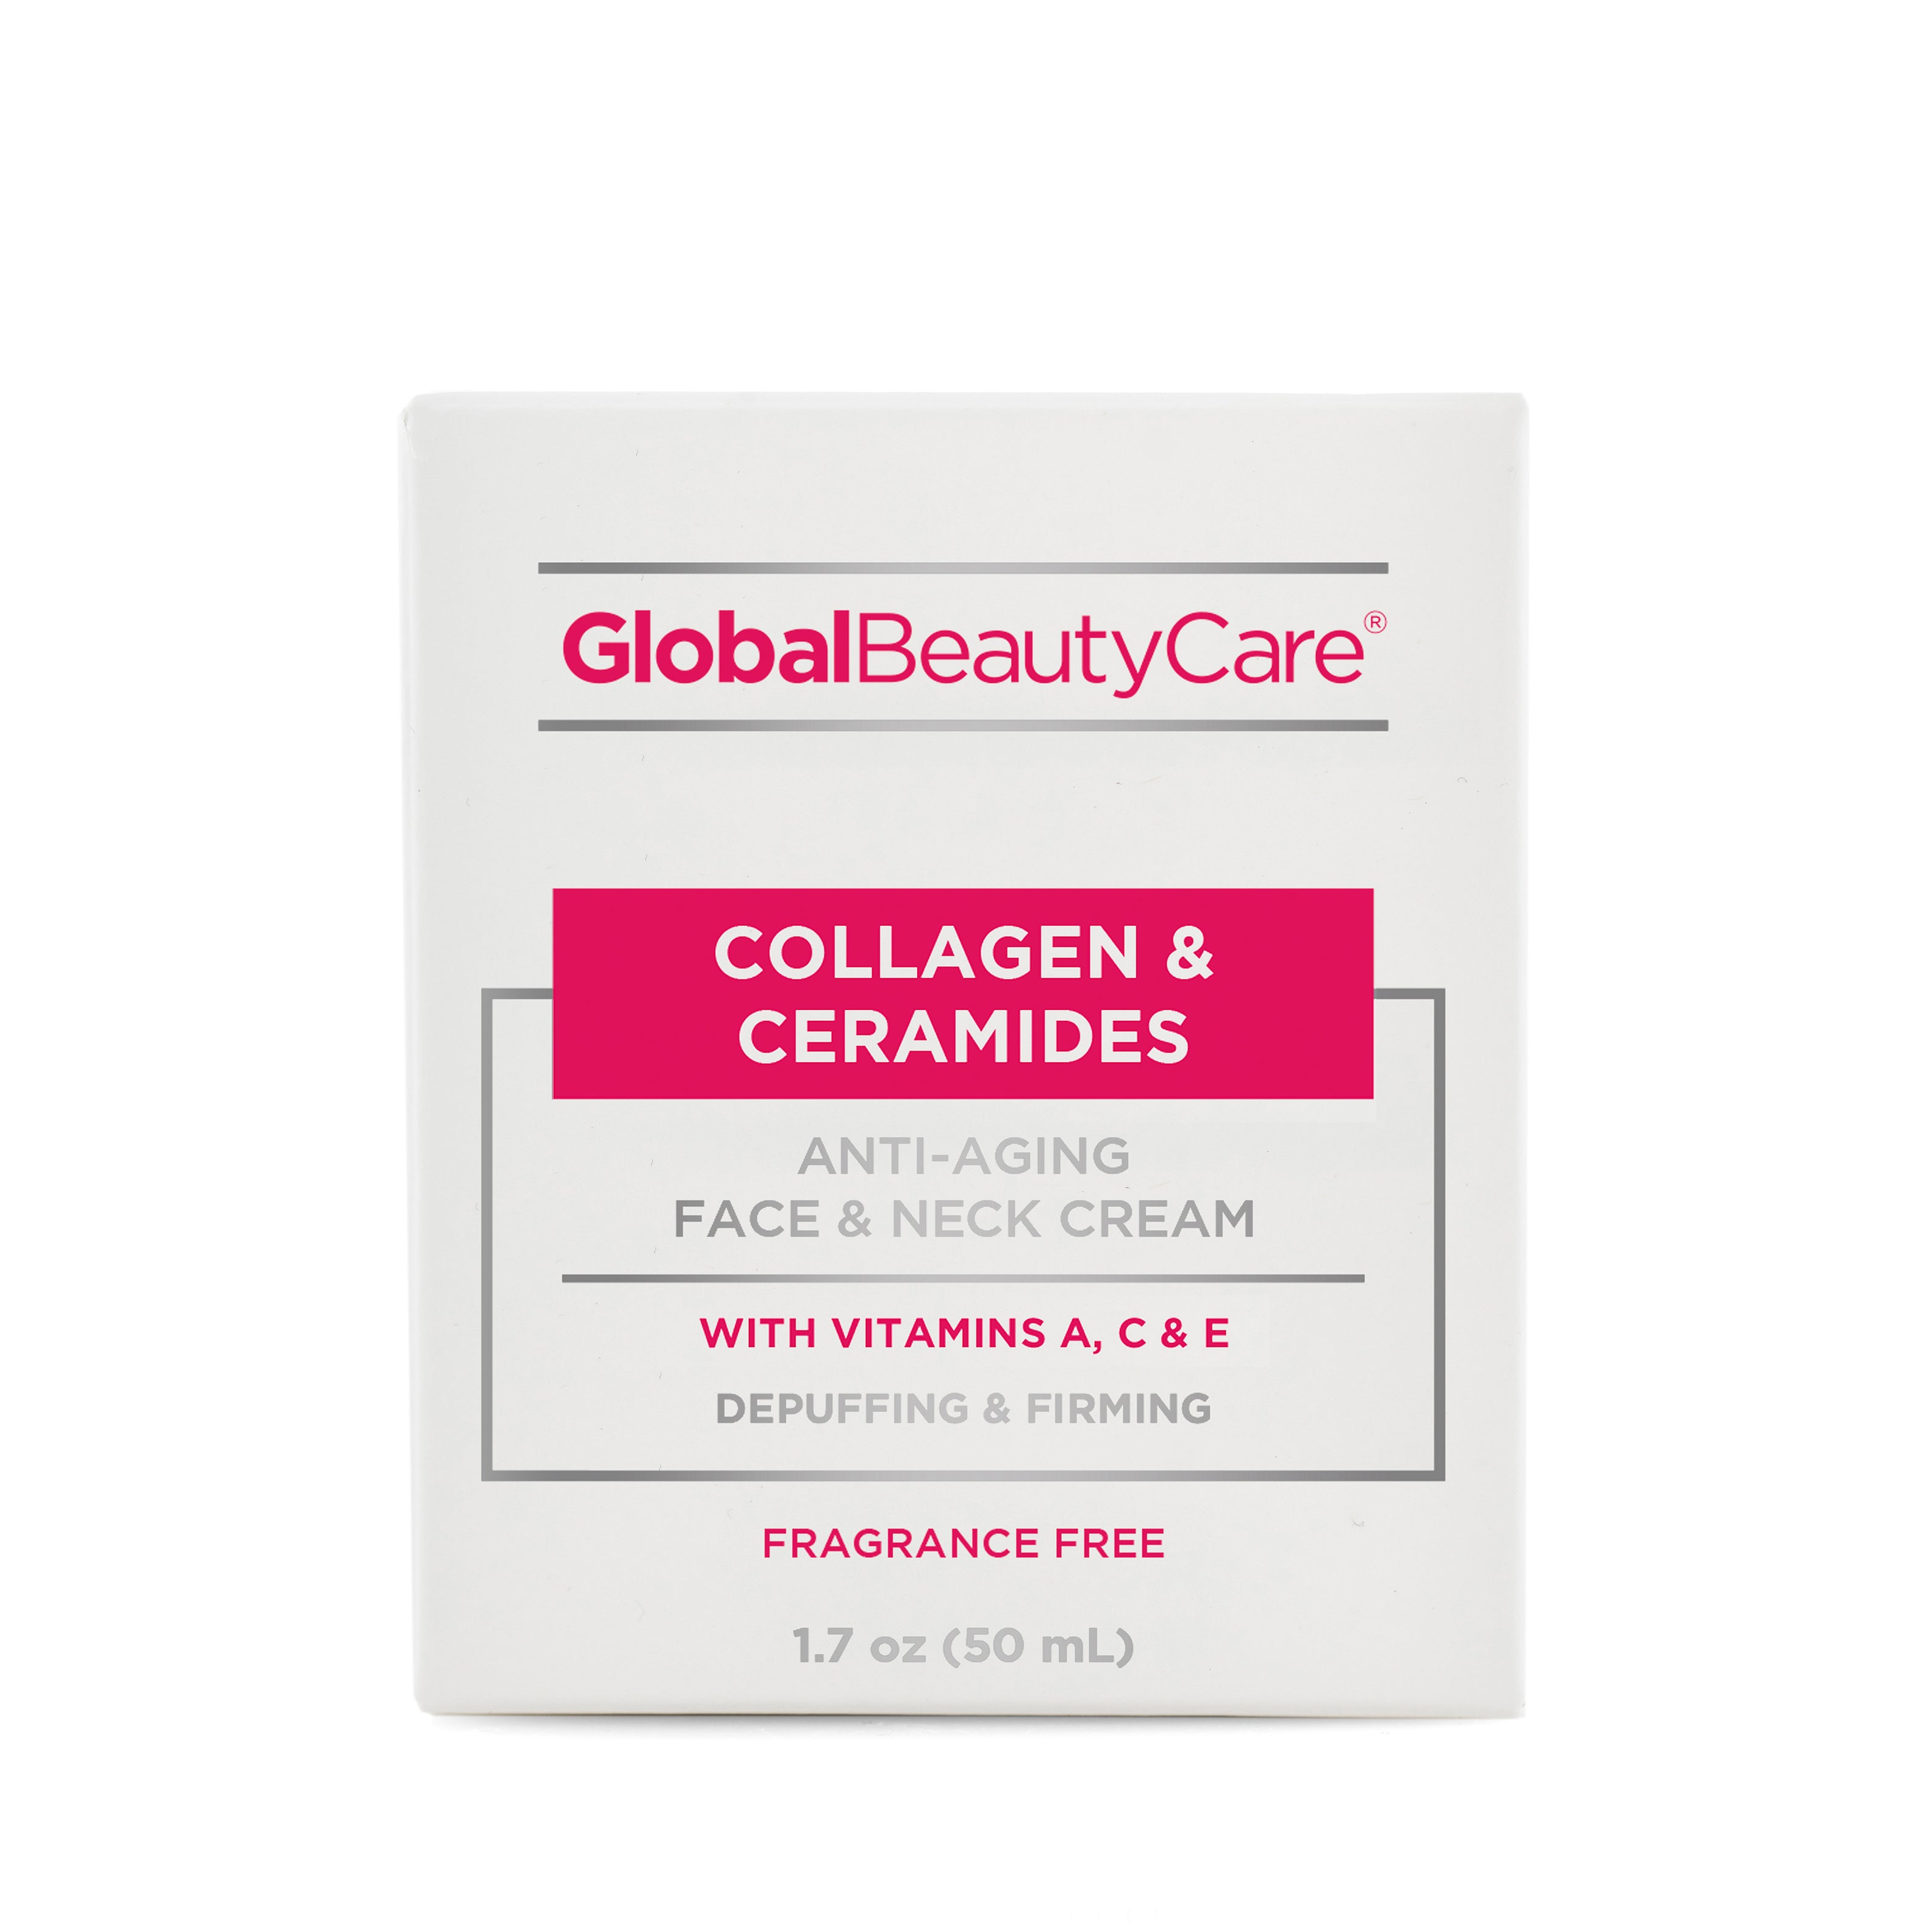 Collagen & Ceramides Anti-Aging Face & Neck Cream